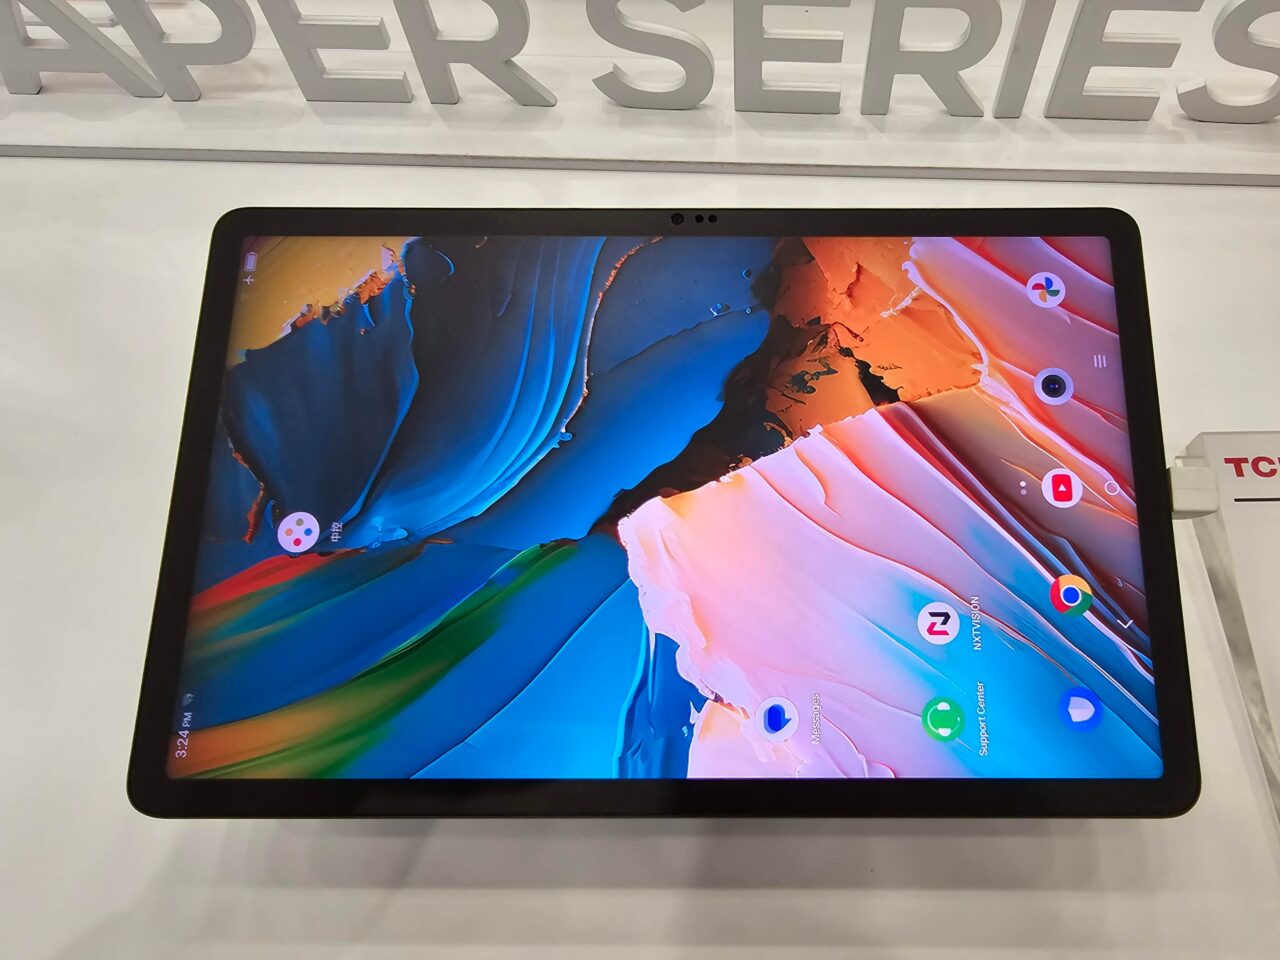 Tablet z wyświetlonym kolorowym ekranem startowym umieszczony na stojaku z napisem "PAPER SERIES" w tle.